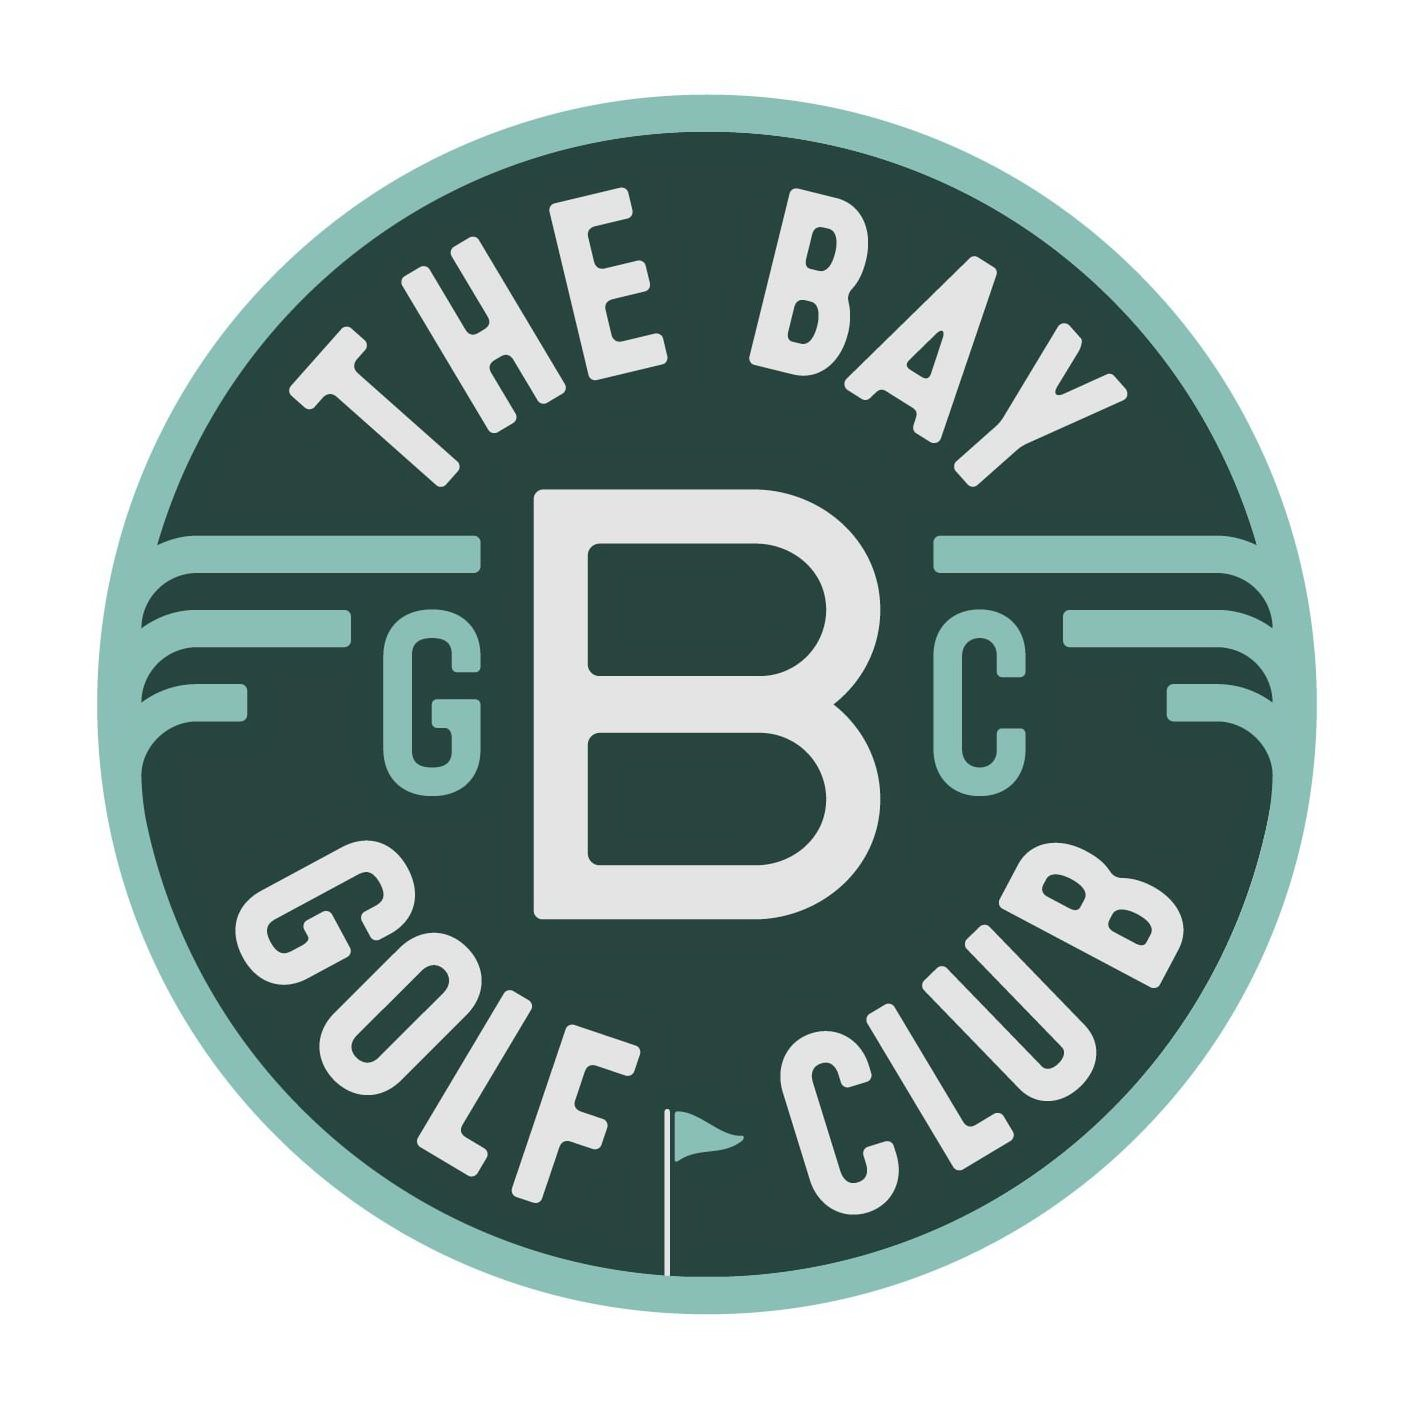  THE BAY GOLF CLUB BGC